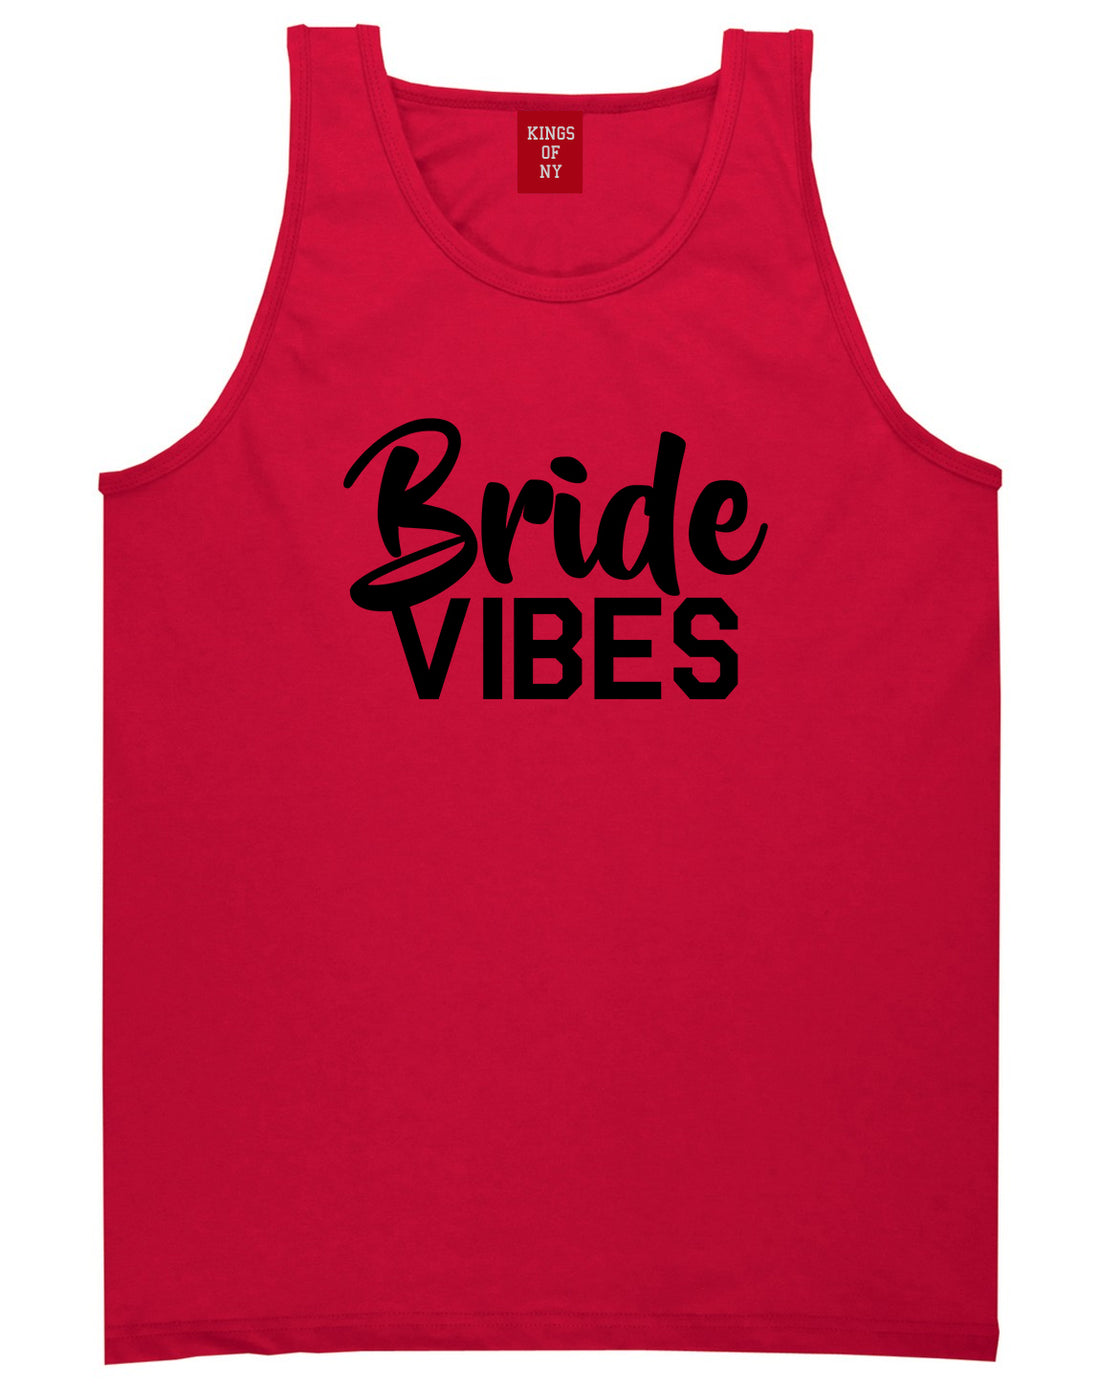 Bride Vibes Bridal Mens Red Tank Top Shirt by KINGS OF NY